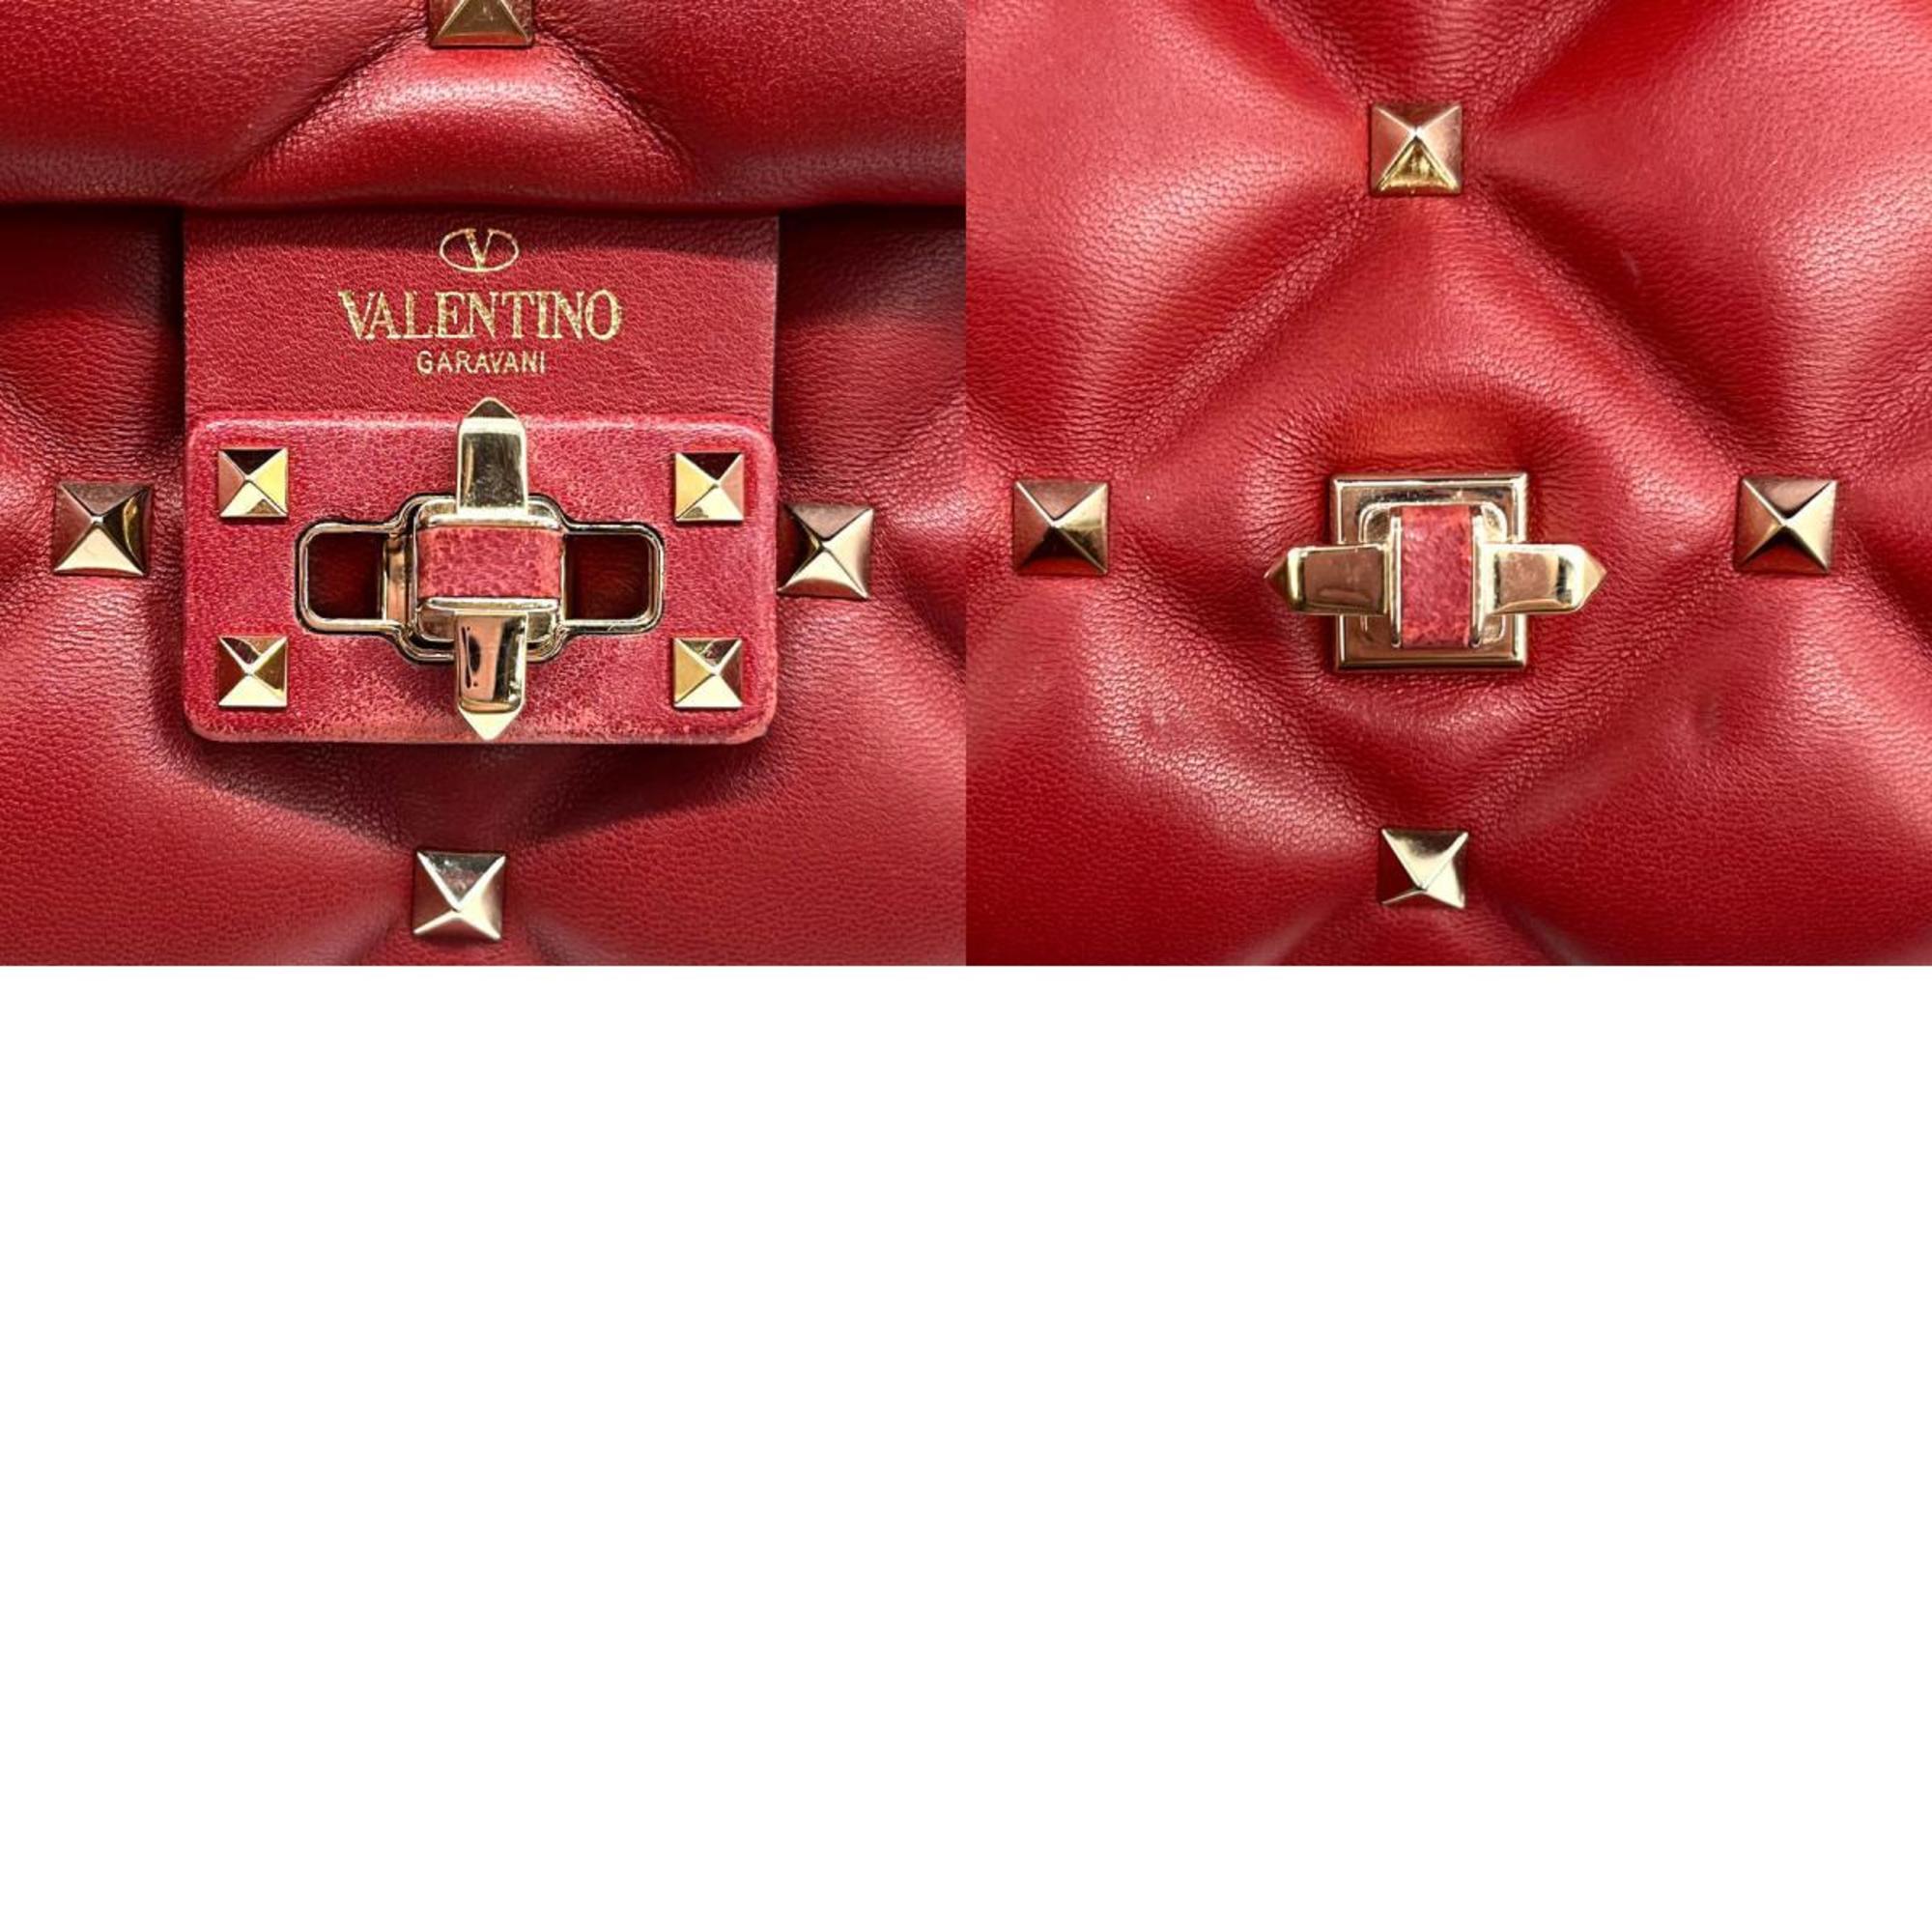 Valentino Garavani Handbag Shoulder Bag Candy Studded Leather/Metal Red Ladies